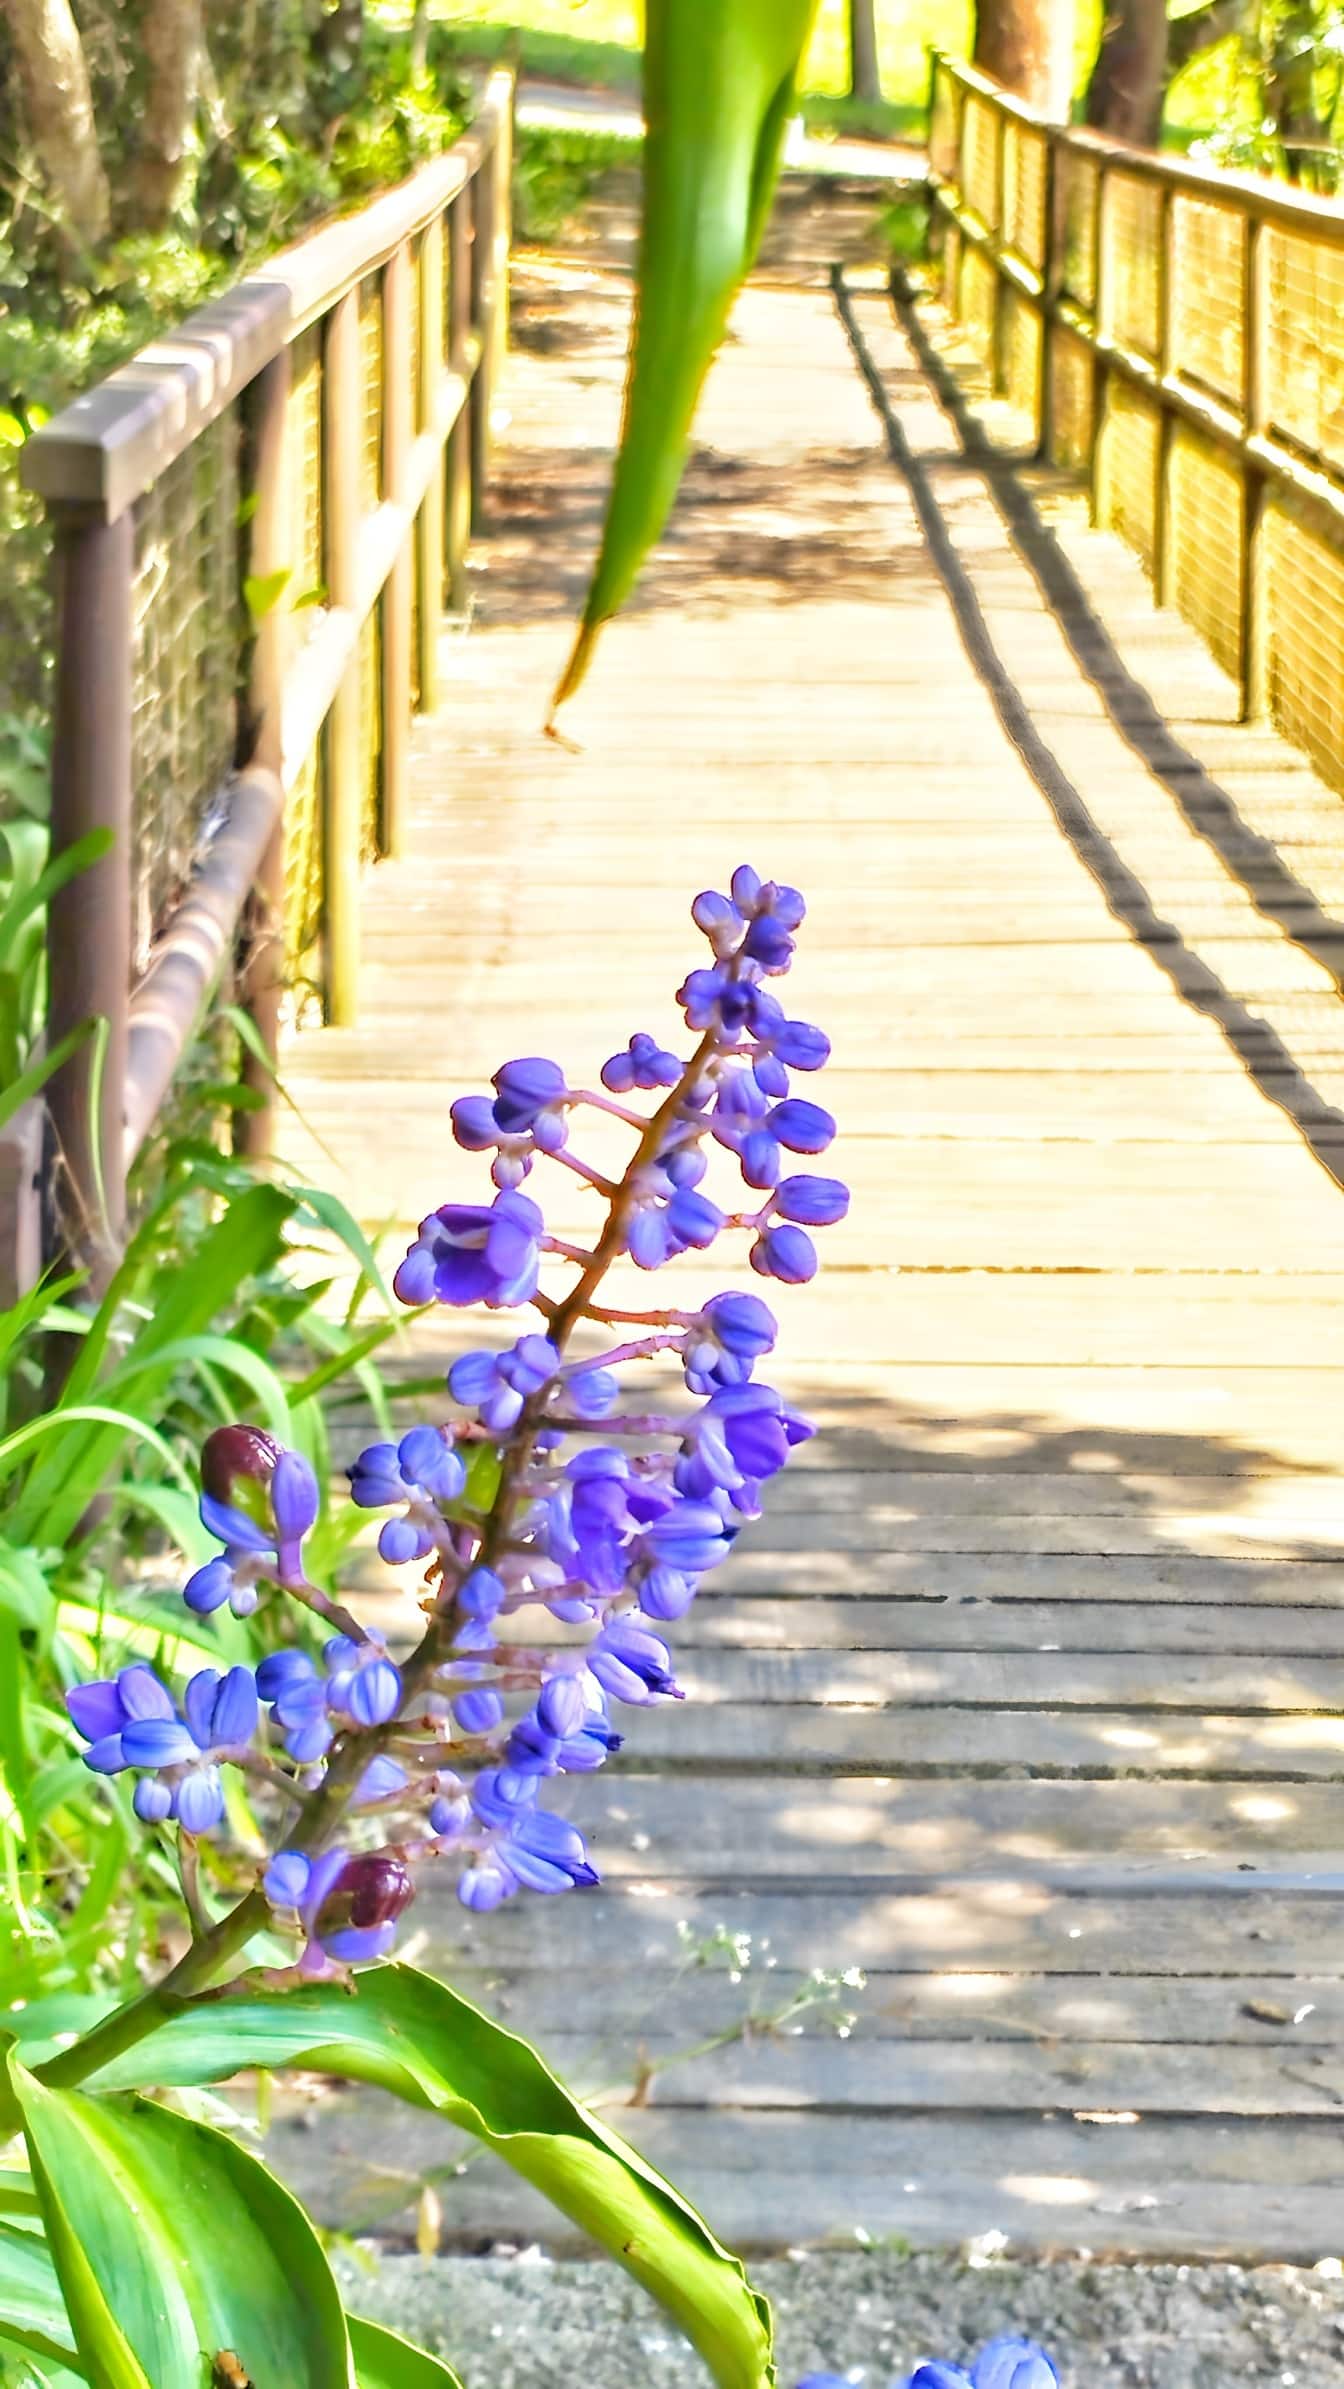 蓝姜花 (Dichorisandra thyrsiflora) 在植物园木桥上的人行道上